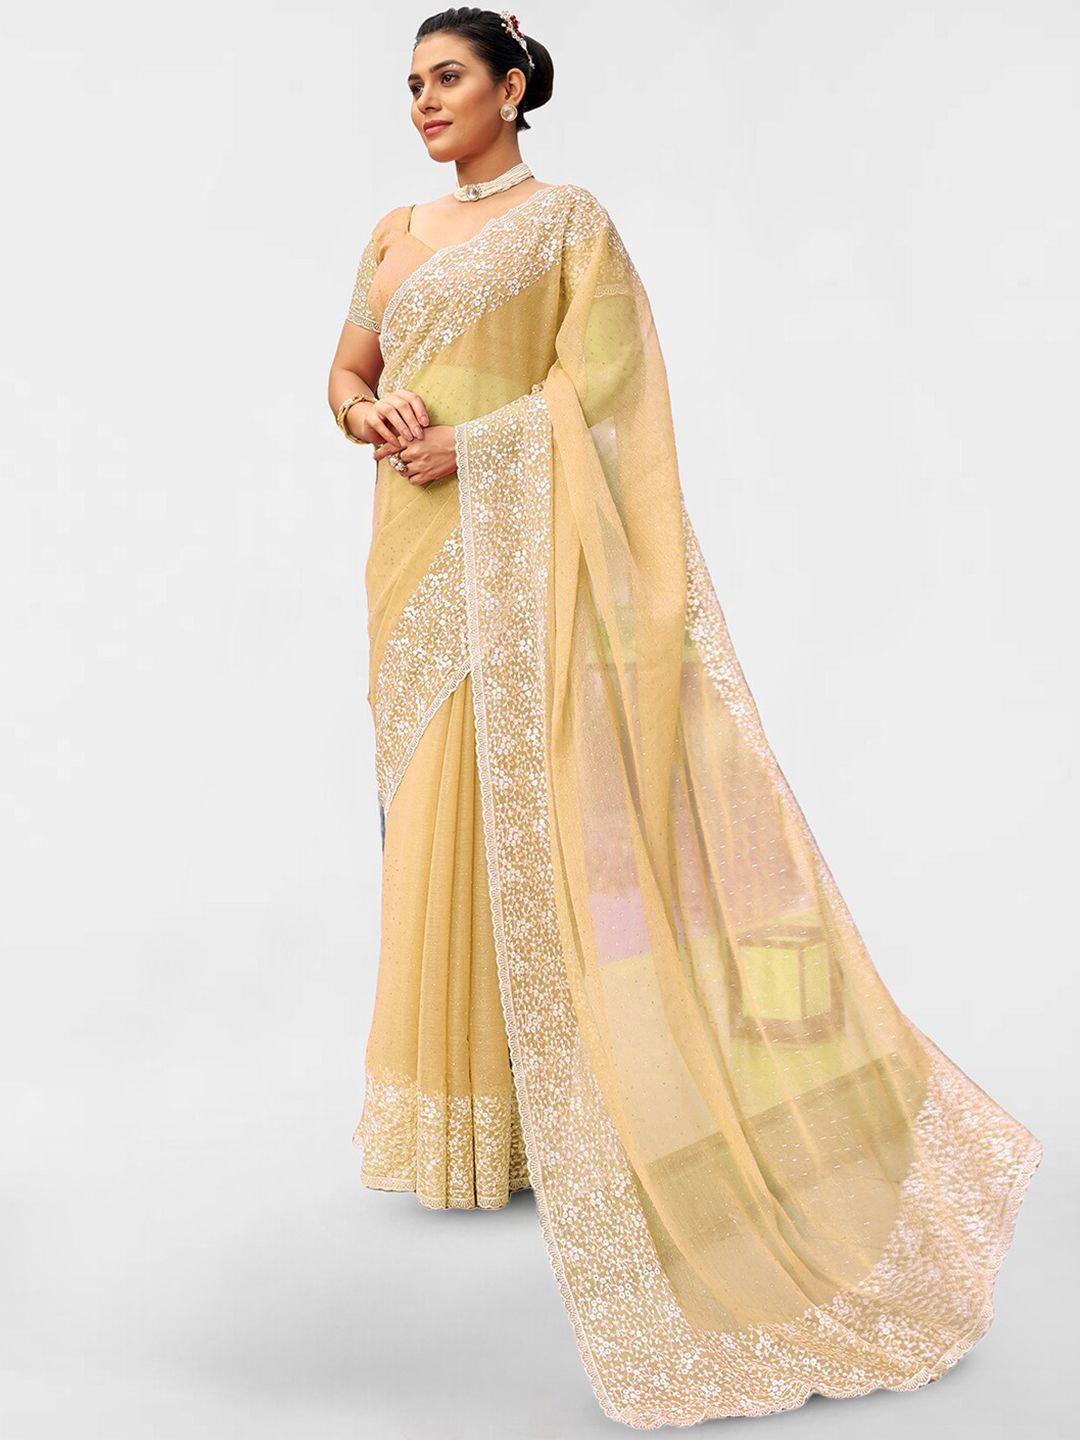 satrani yellow & white embellished beads and stones poly chiffon saree